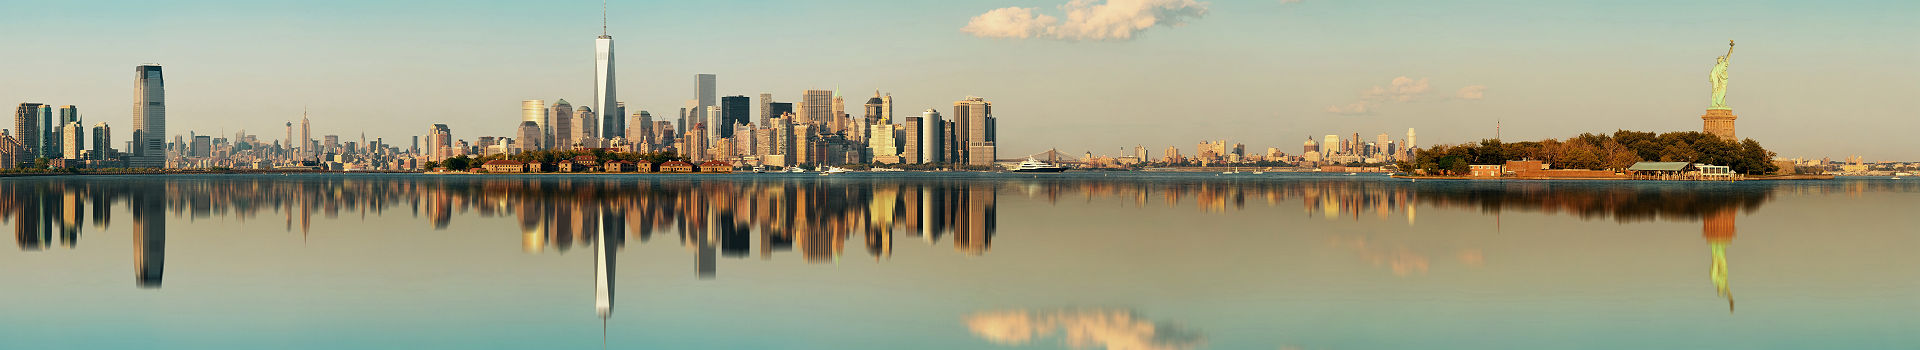 Manhattan - Vue de la ville et effet miroir sur l'eau